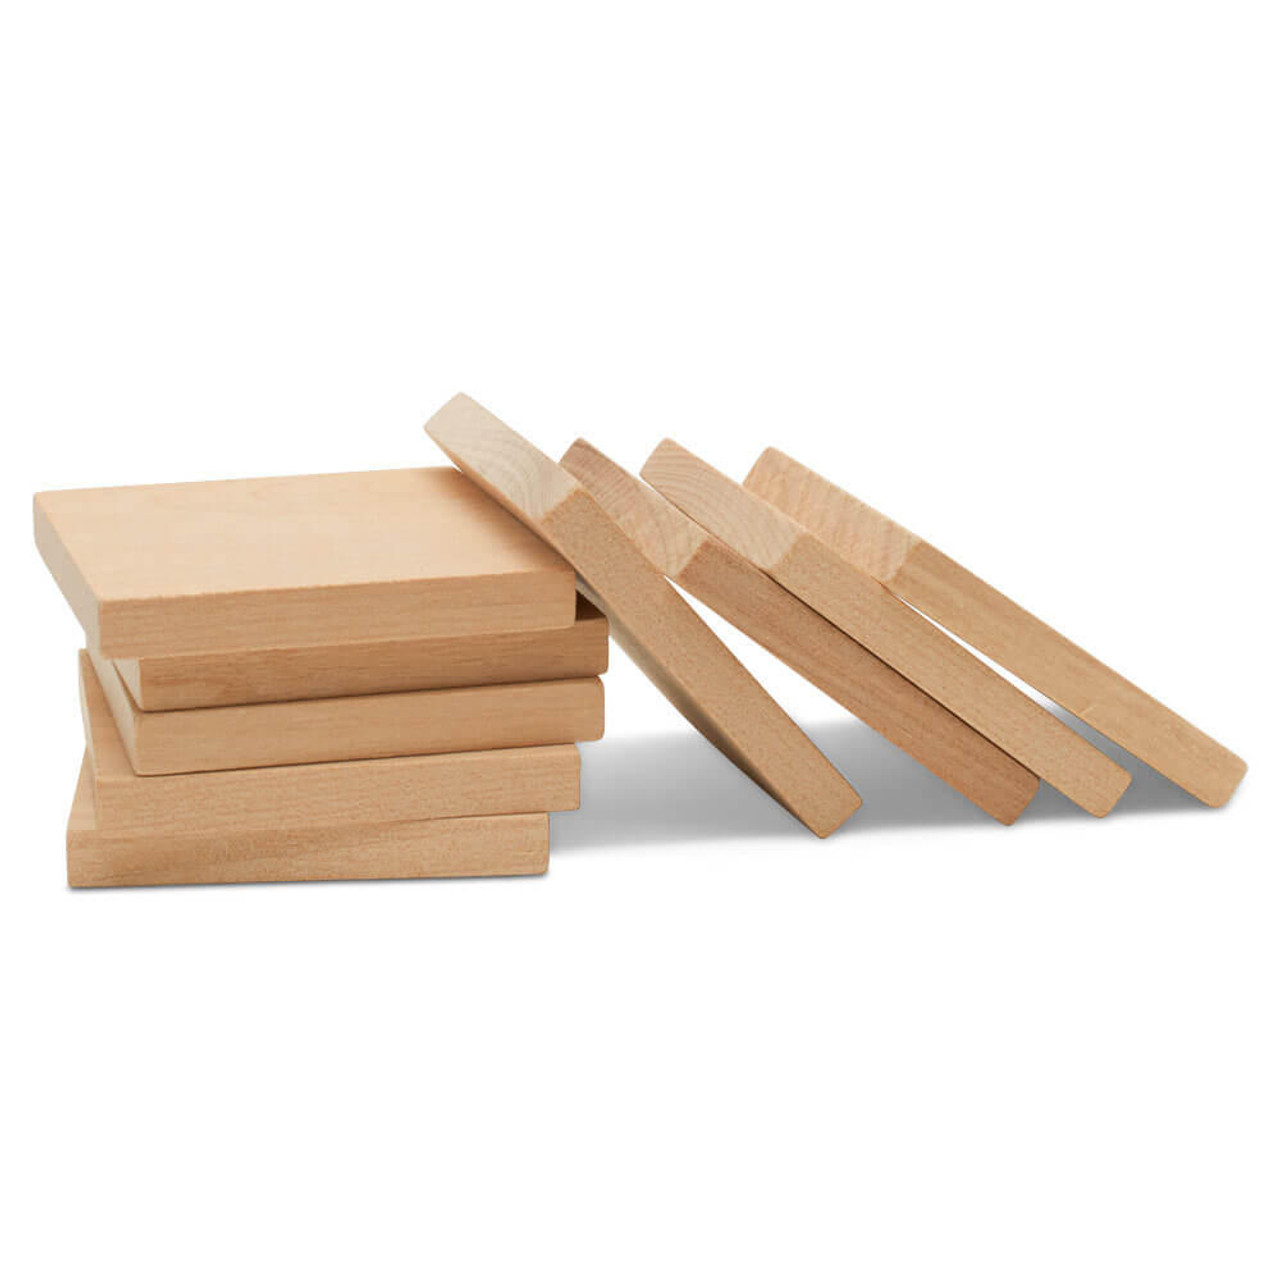 Buy Wholesale China Seasonal Wooden Cutouts Unfinished Wood